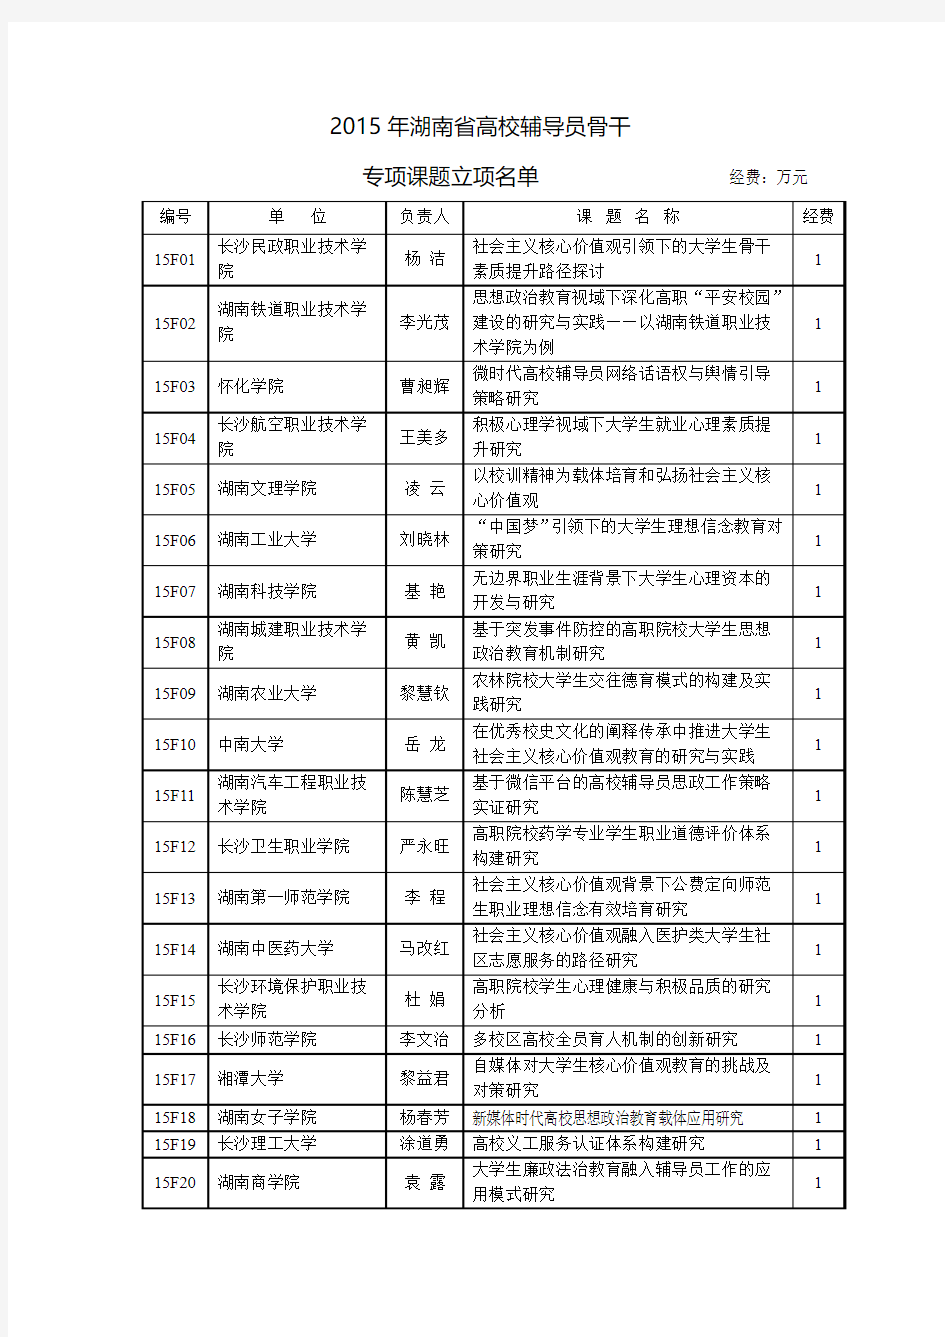 2015年湖南省高校辅导员骨干专项课题立项名单